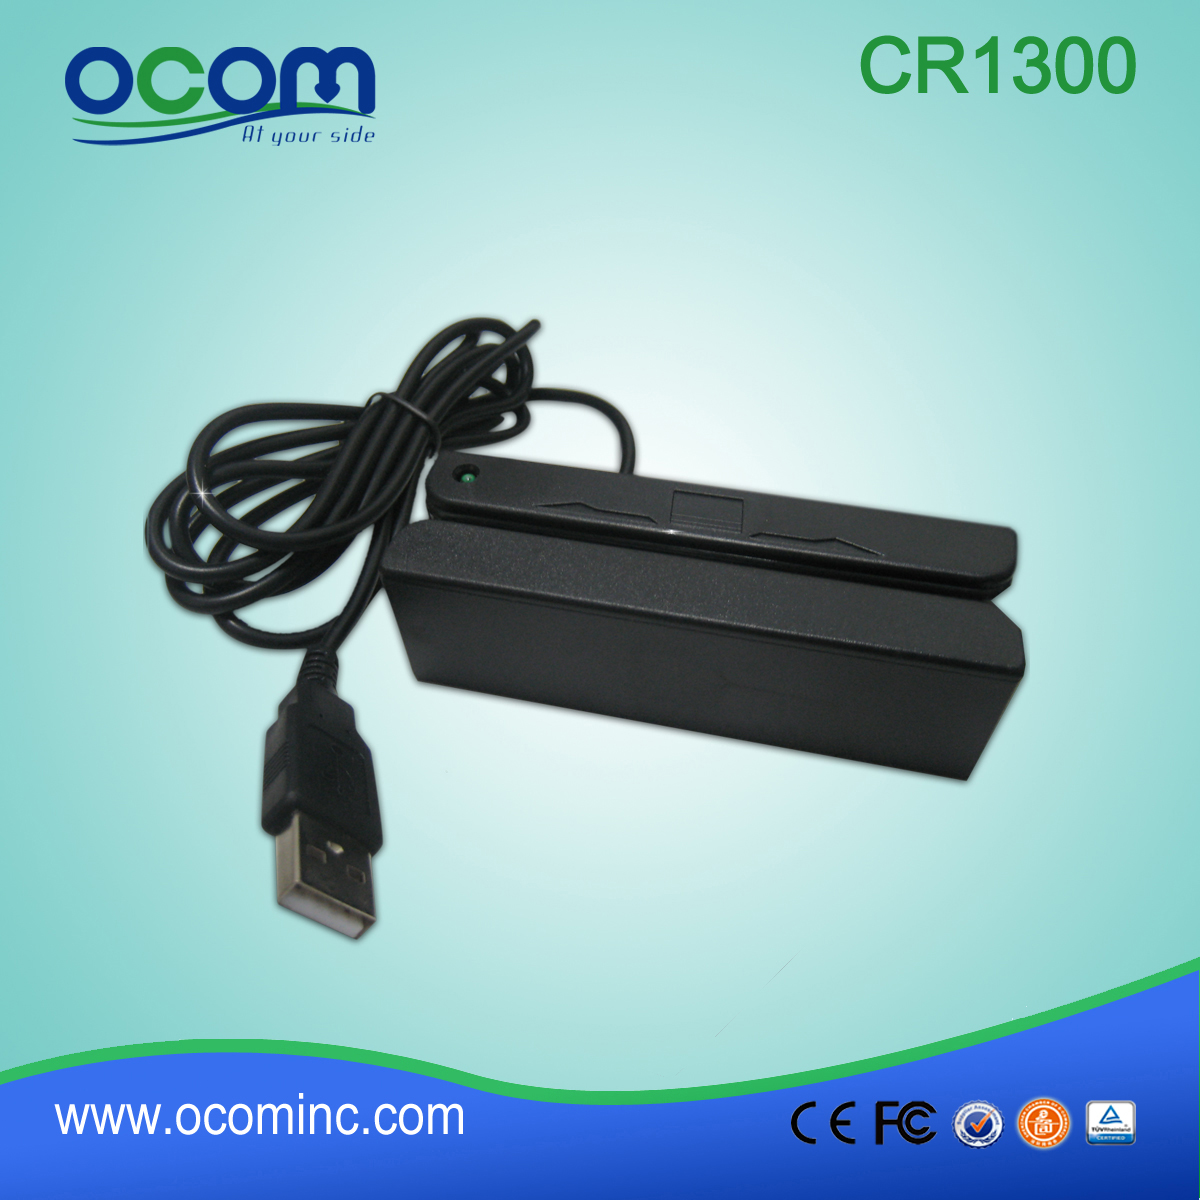 CR1300 Устройство считывания магнитных карт OCOM для GPS-трекера